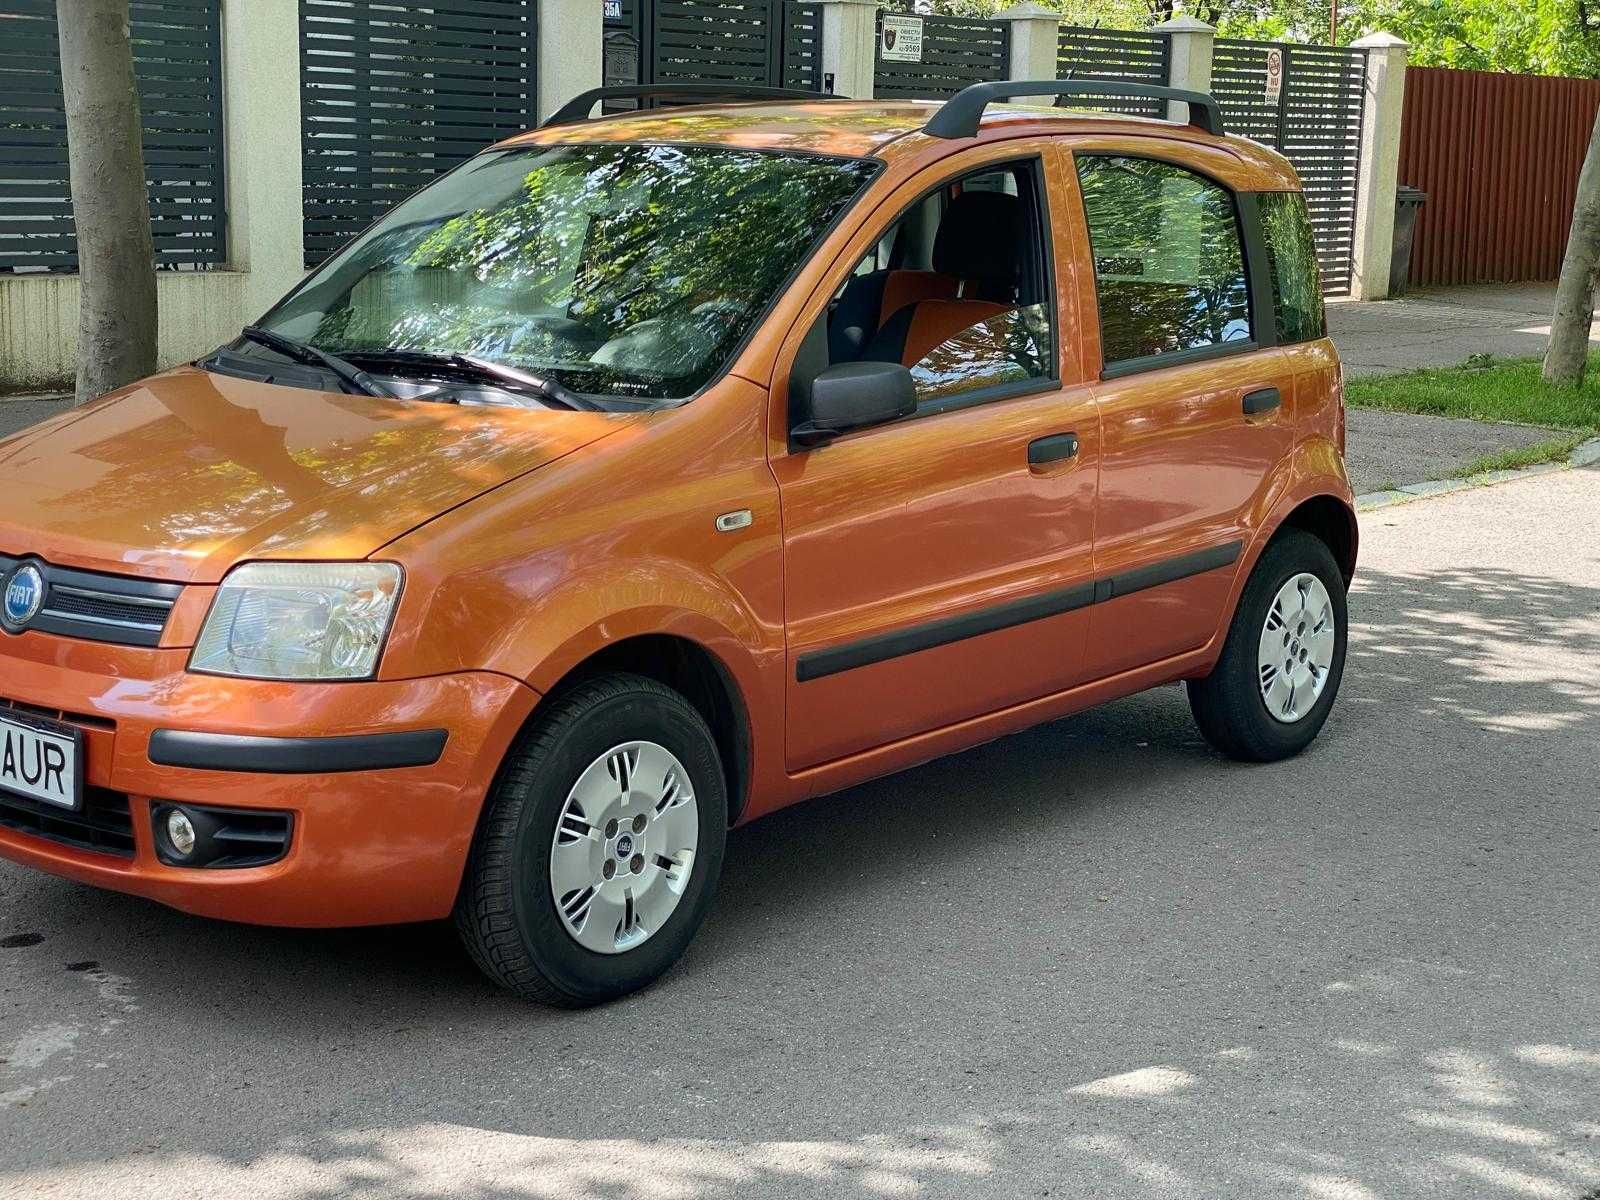 Fiat panda 1.3 diesel, 180000 km, consum 4.5%